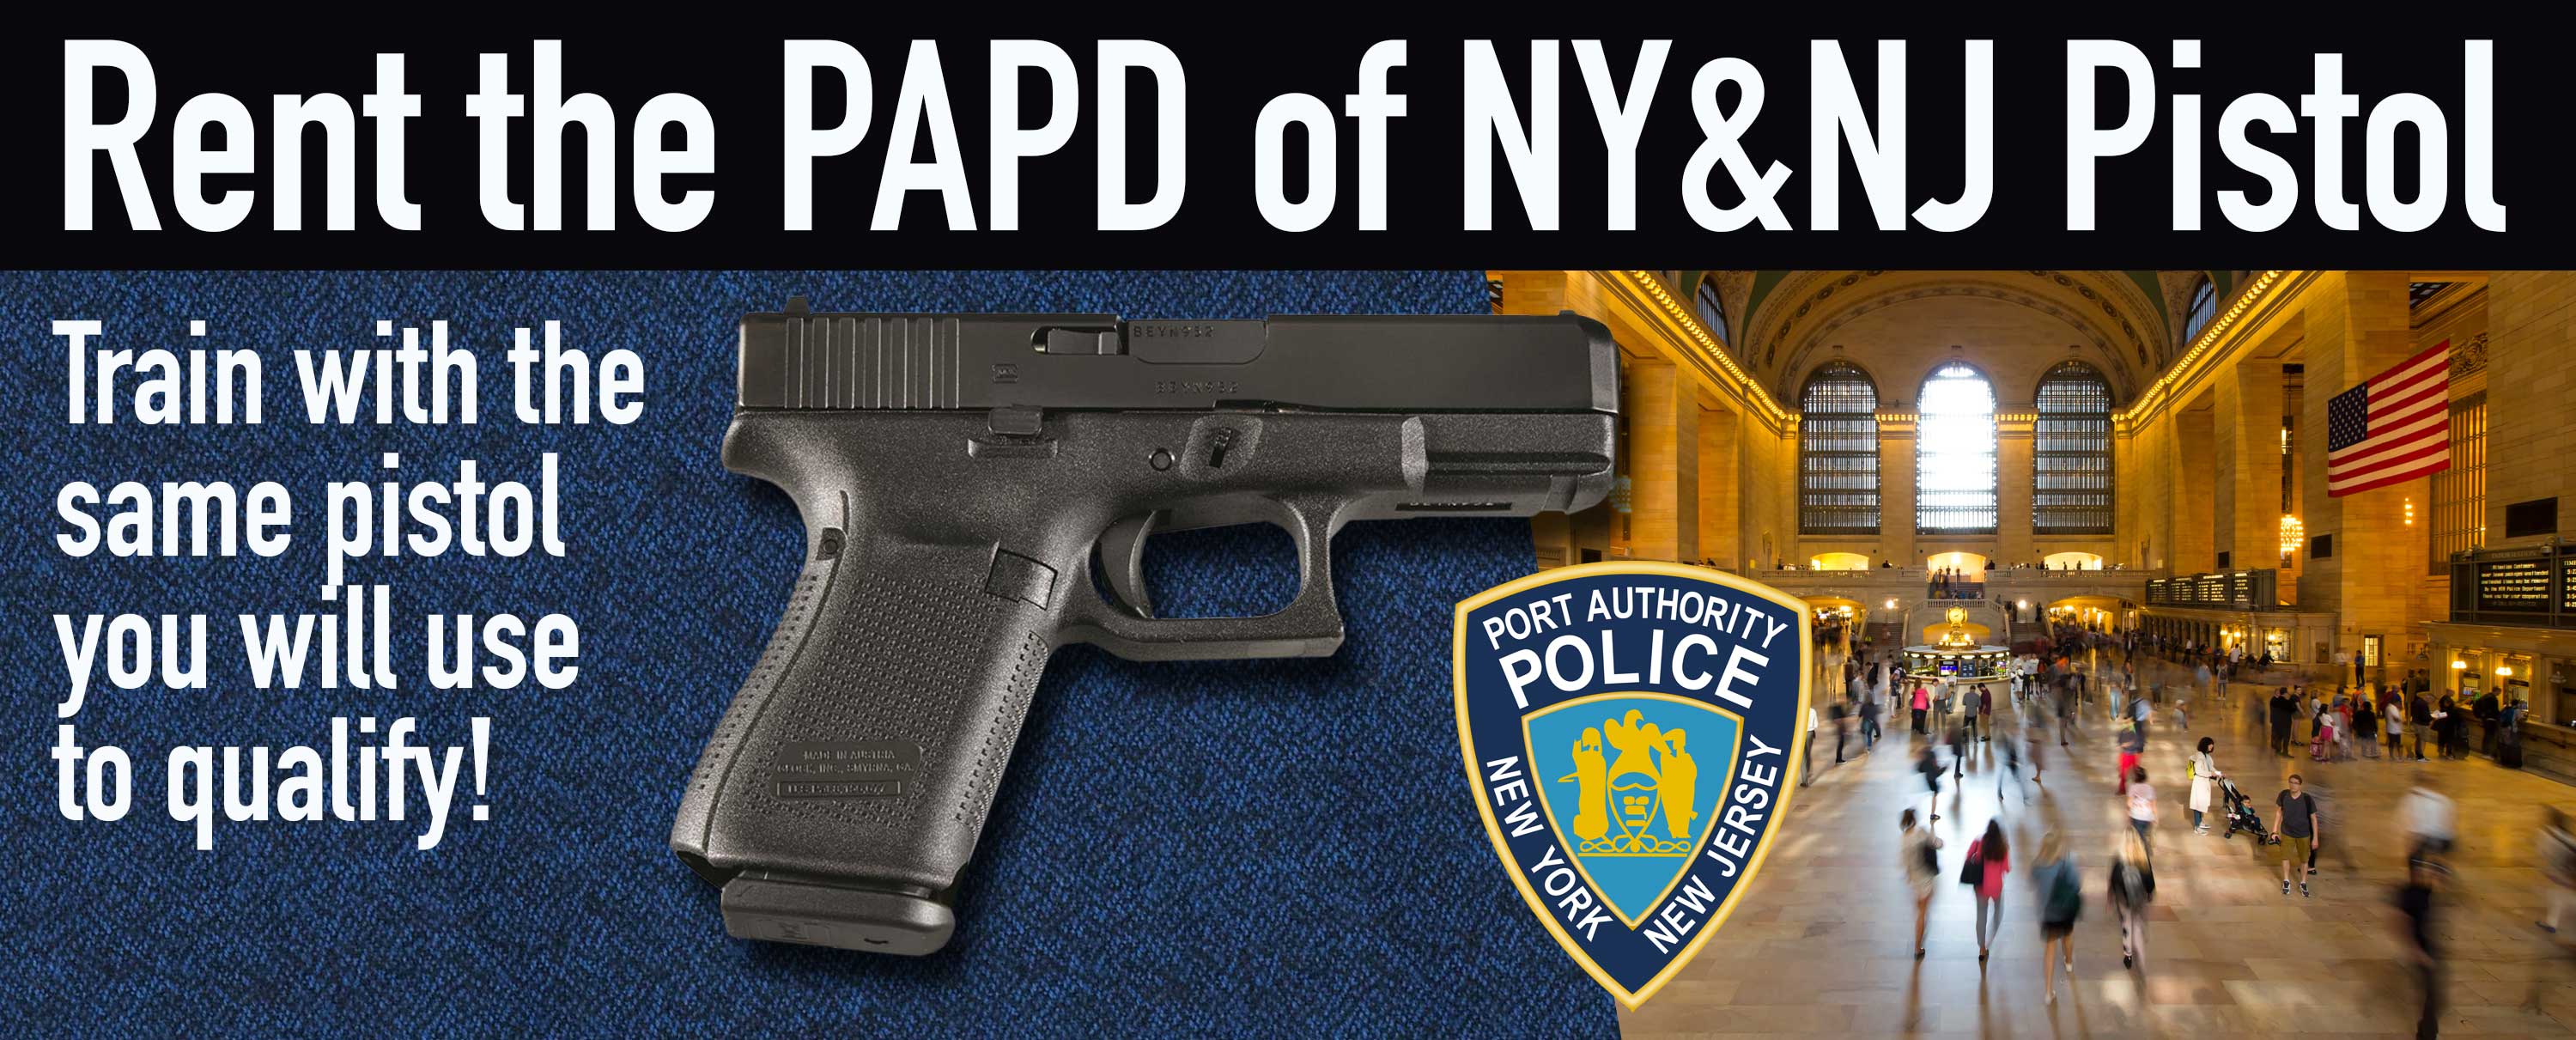 PASPD Pistol - PAPD Gun Rental